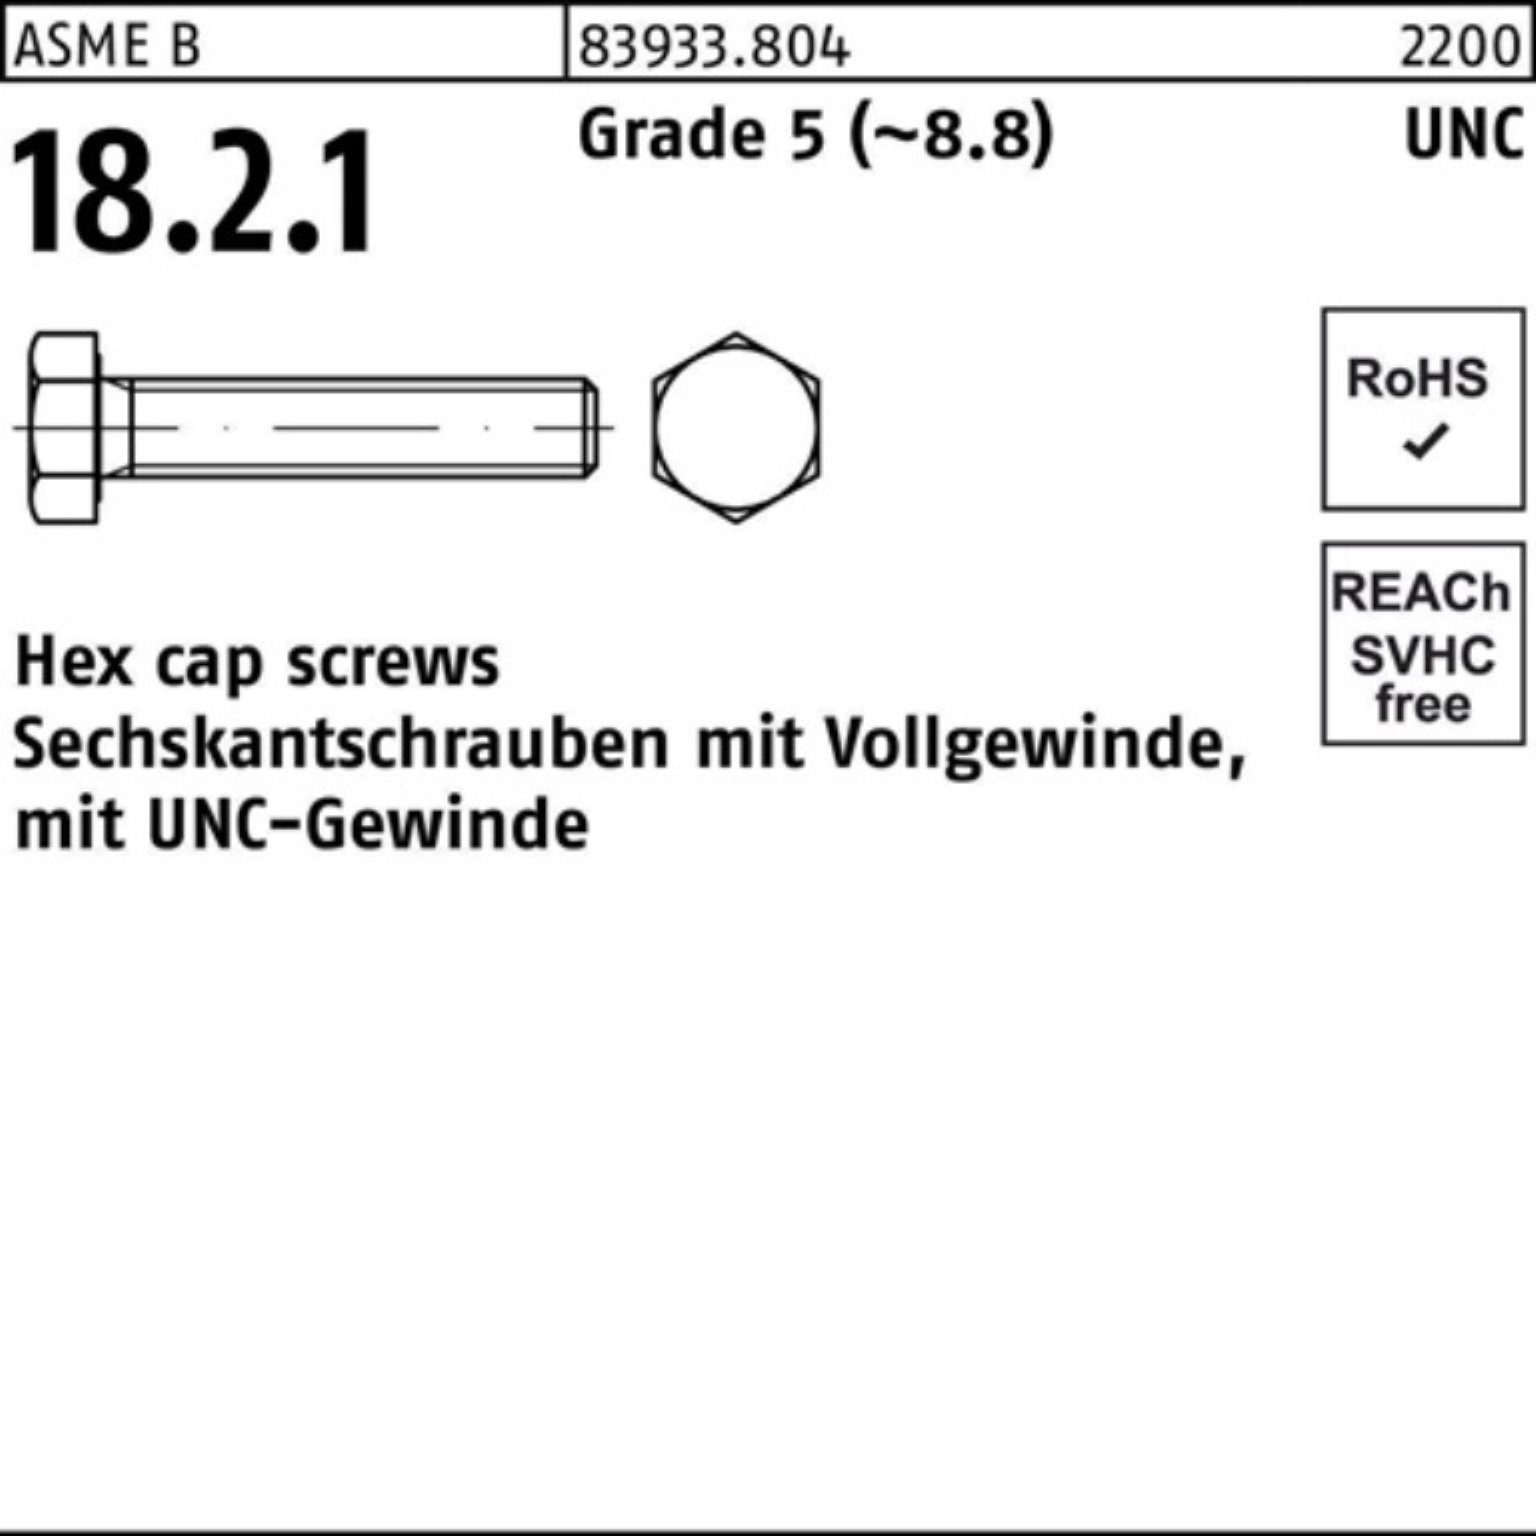 Reyher Sechskantschraube 100er Pack Sechskantschraube R 83933 UNC-Gewinde VG 1/2x 7/8 Grade 5